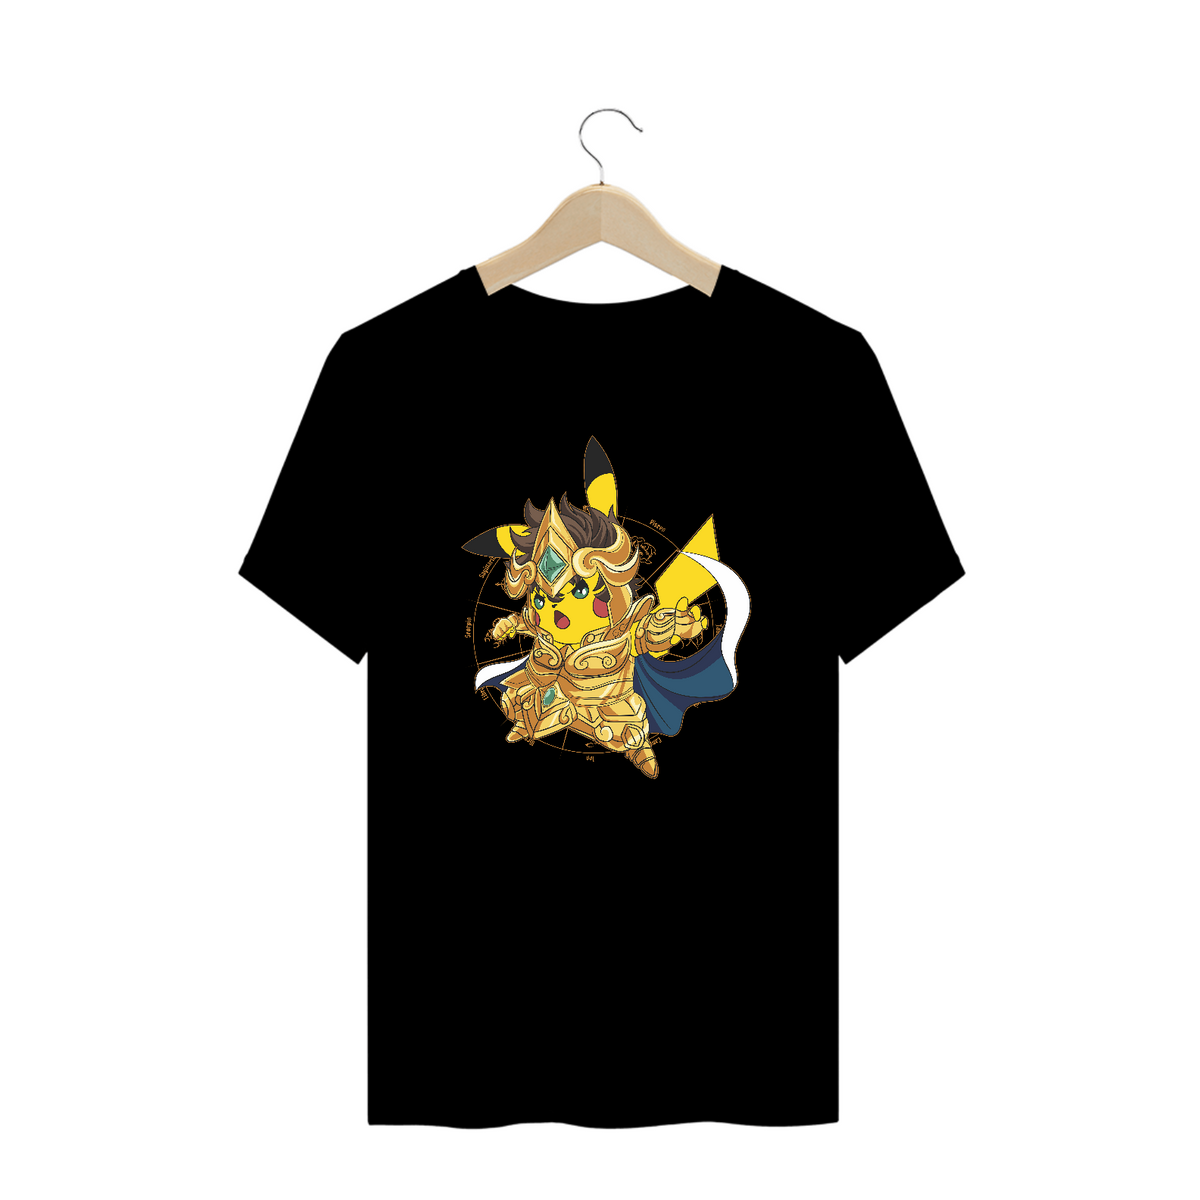 Nome do produto: Cavaleiro Pikachu